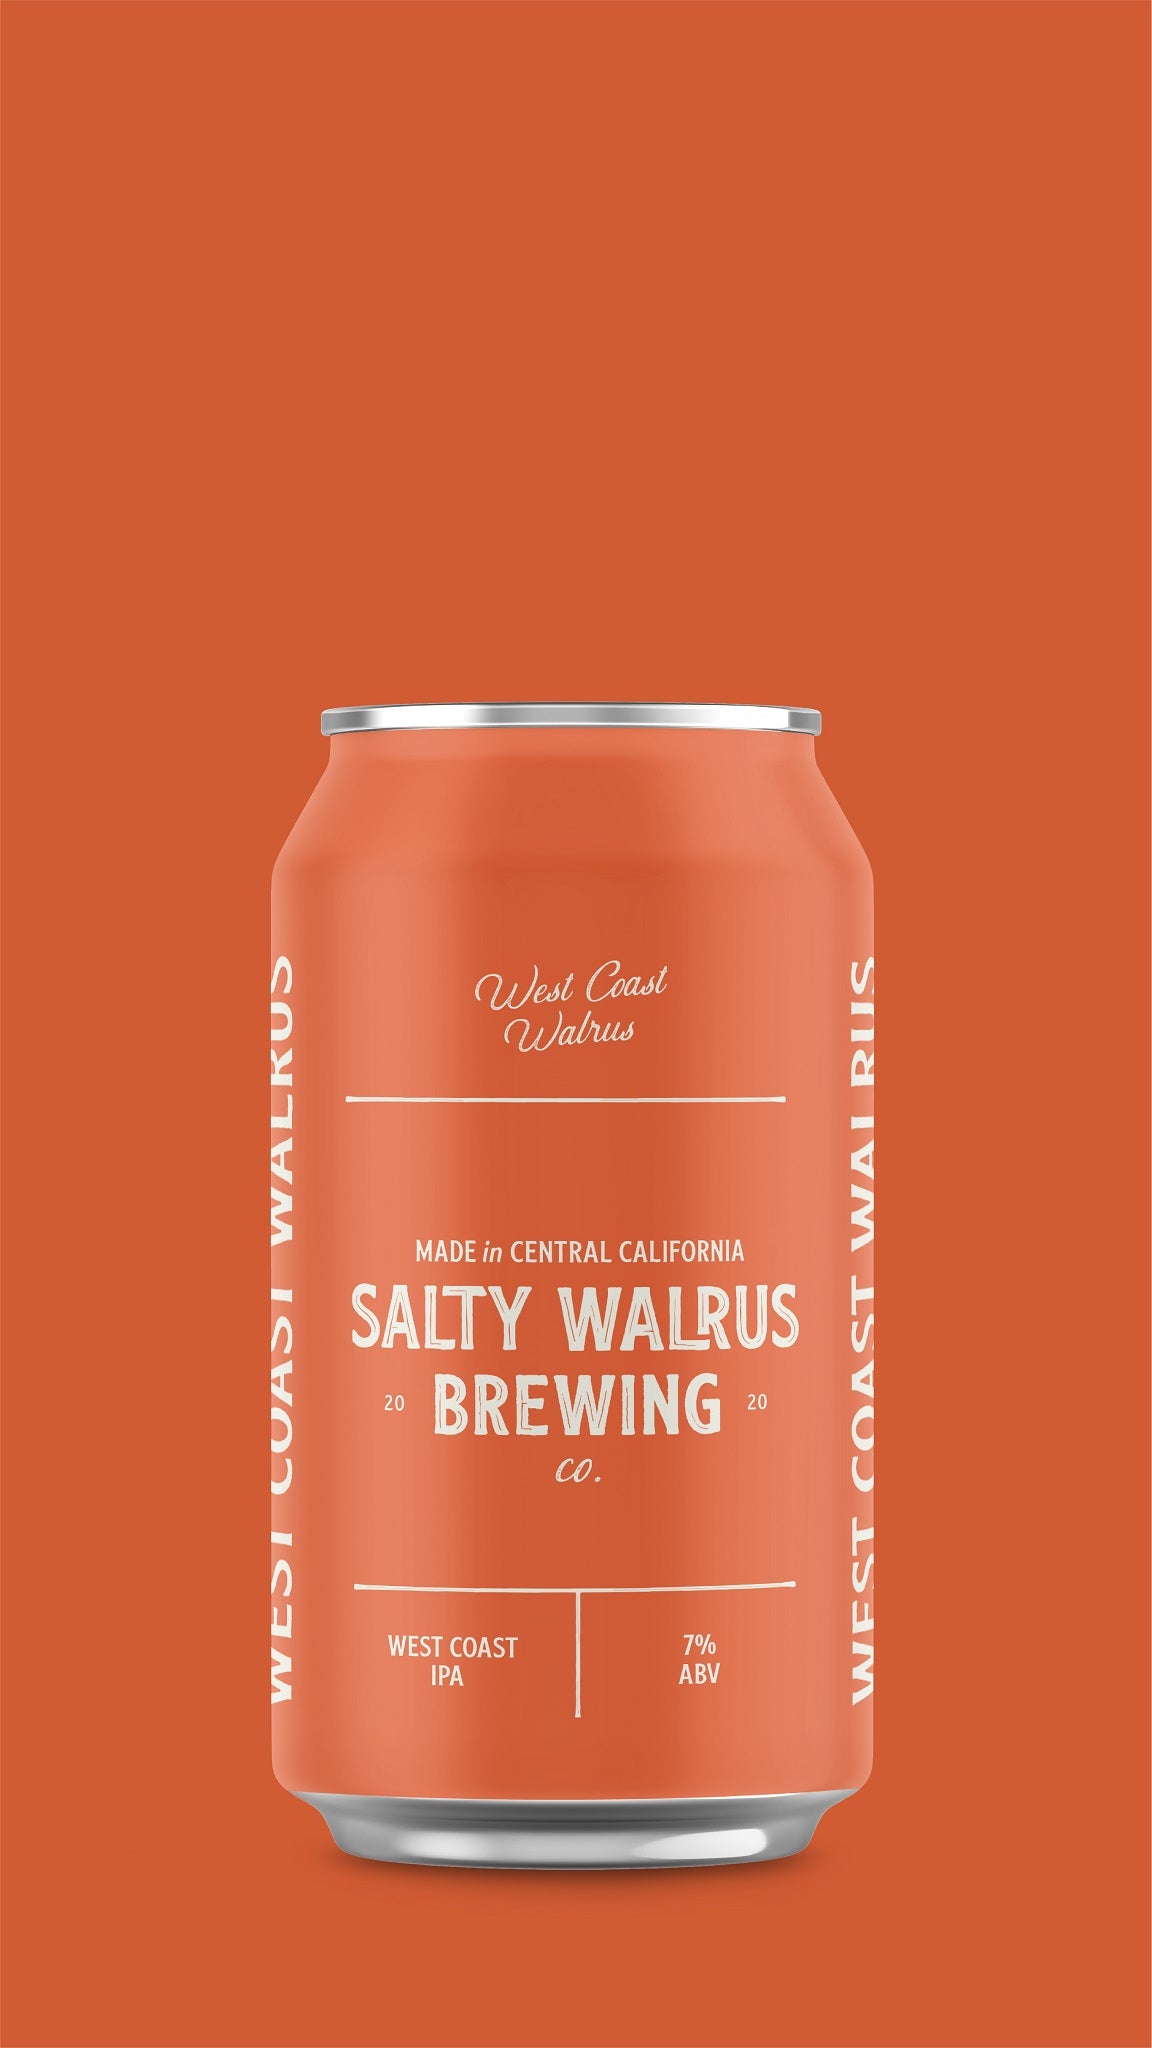 Salty Walrus Brewing Co.